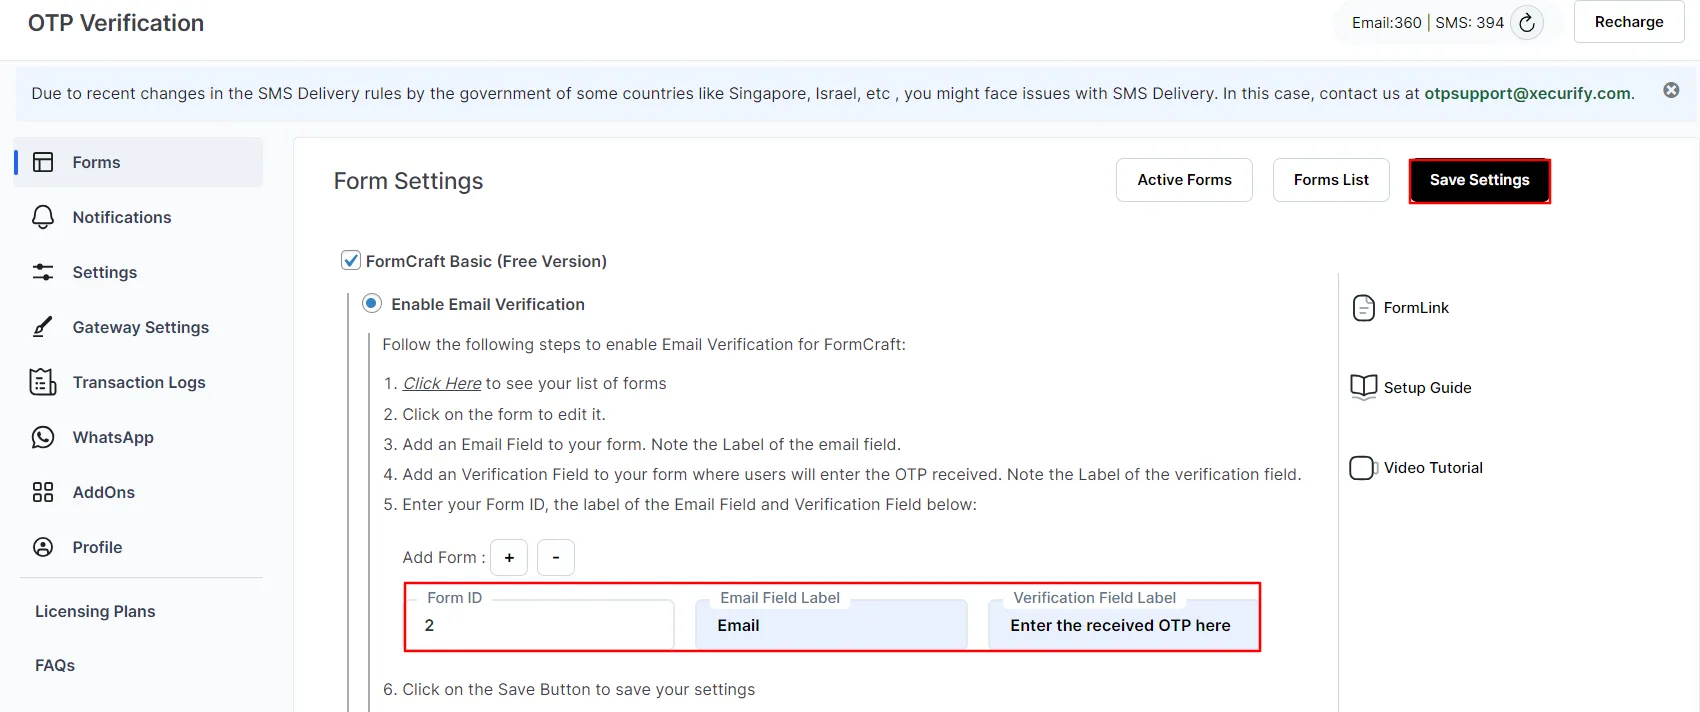 Verificación otp gratuita de formcraft básico: ingrese la etiqueta del campo de correo electrónico